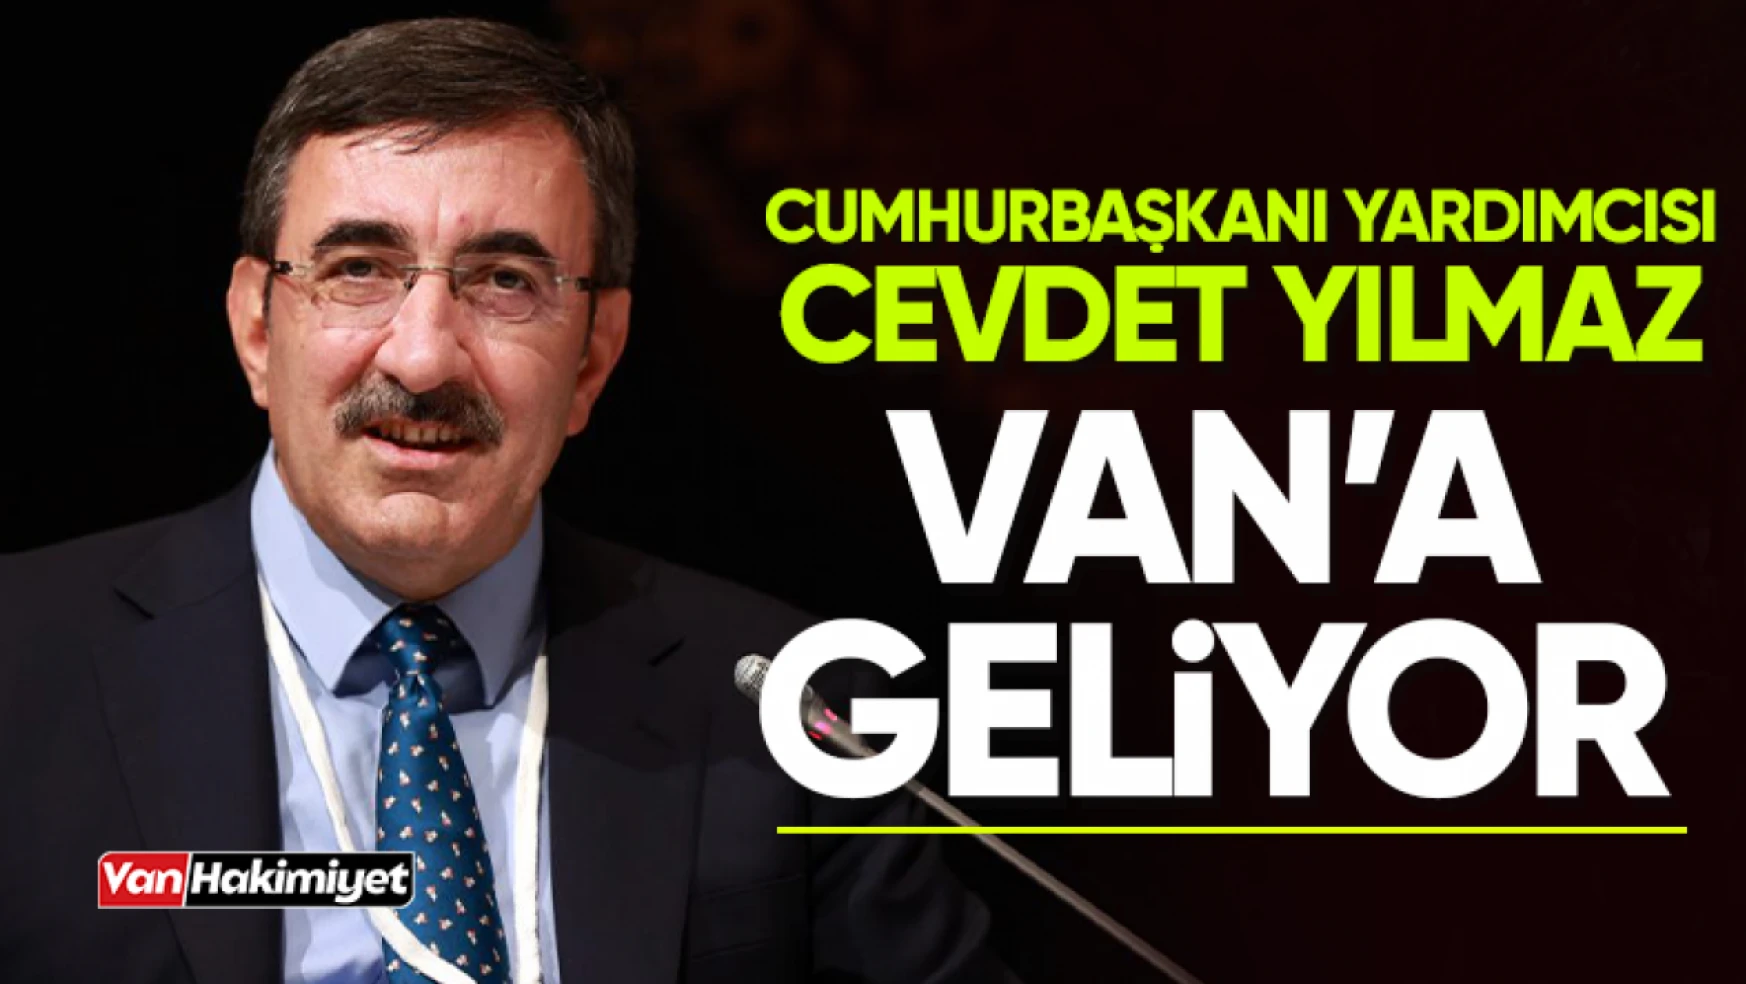 Cumhurbaşkanı Yardımcısı Cevdet Yılmaz Van'a geliyor!